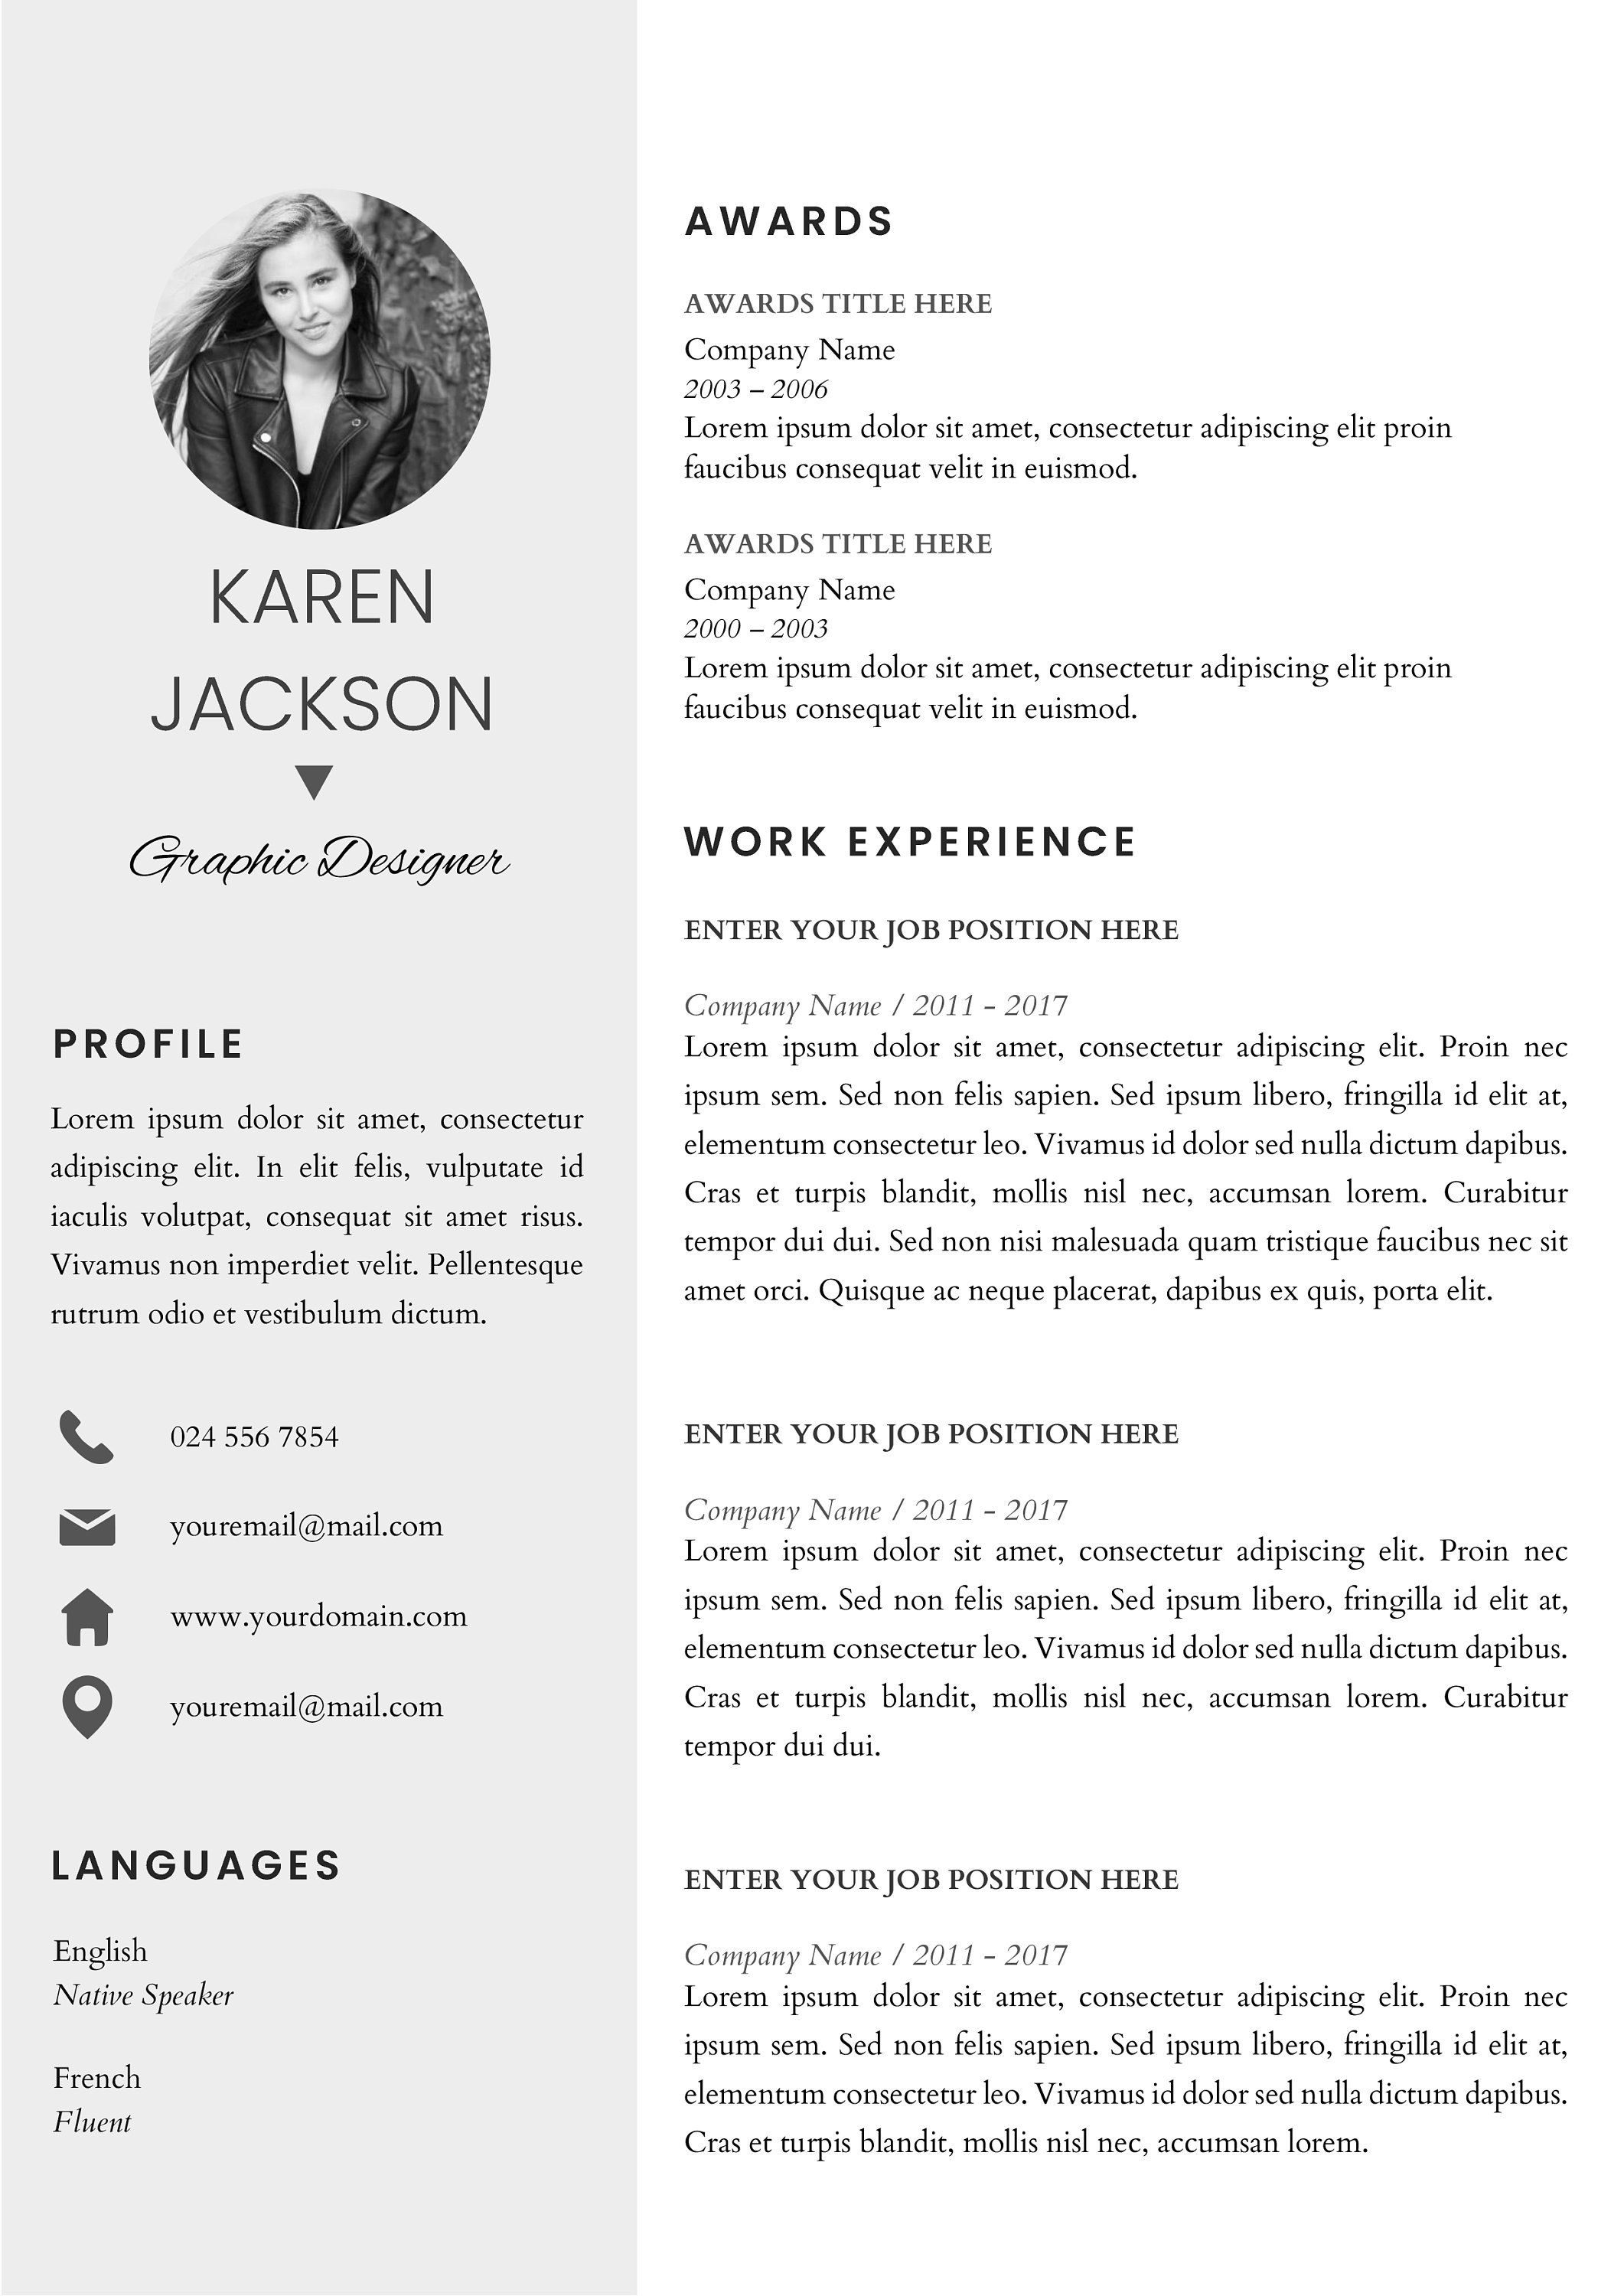 Resume | CV Template Cover Letter - Karen Jackson